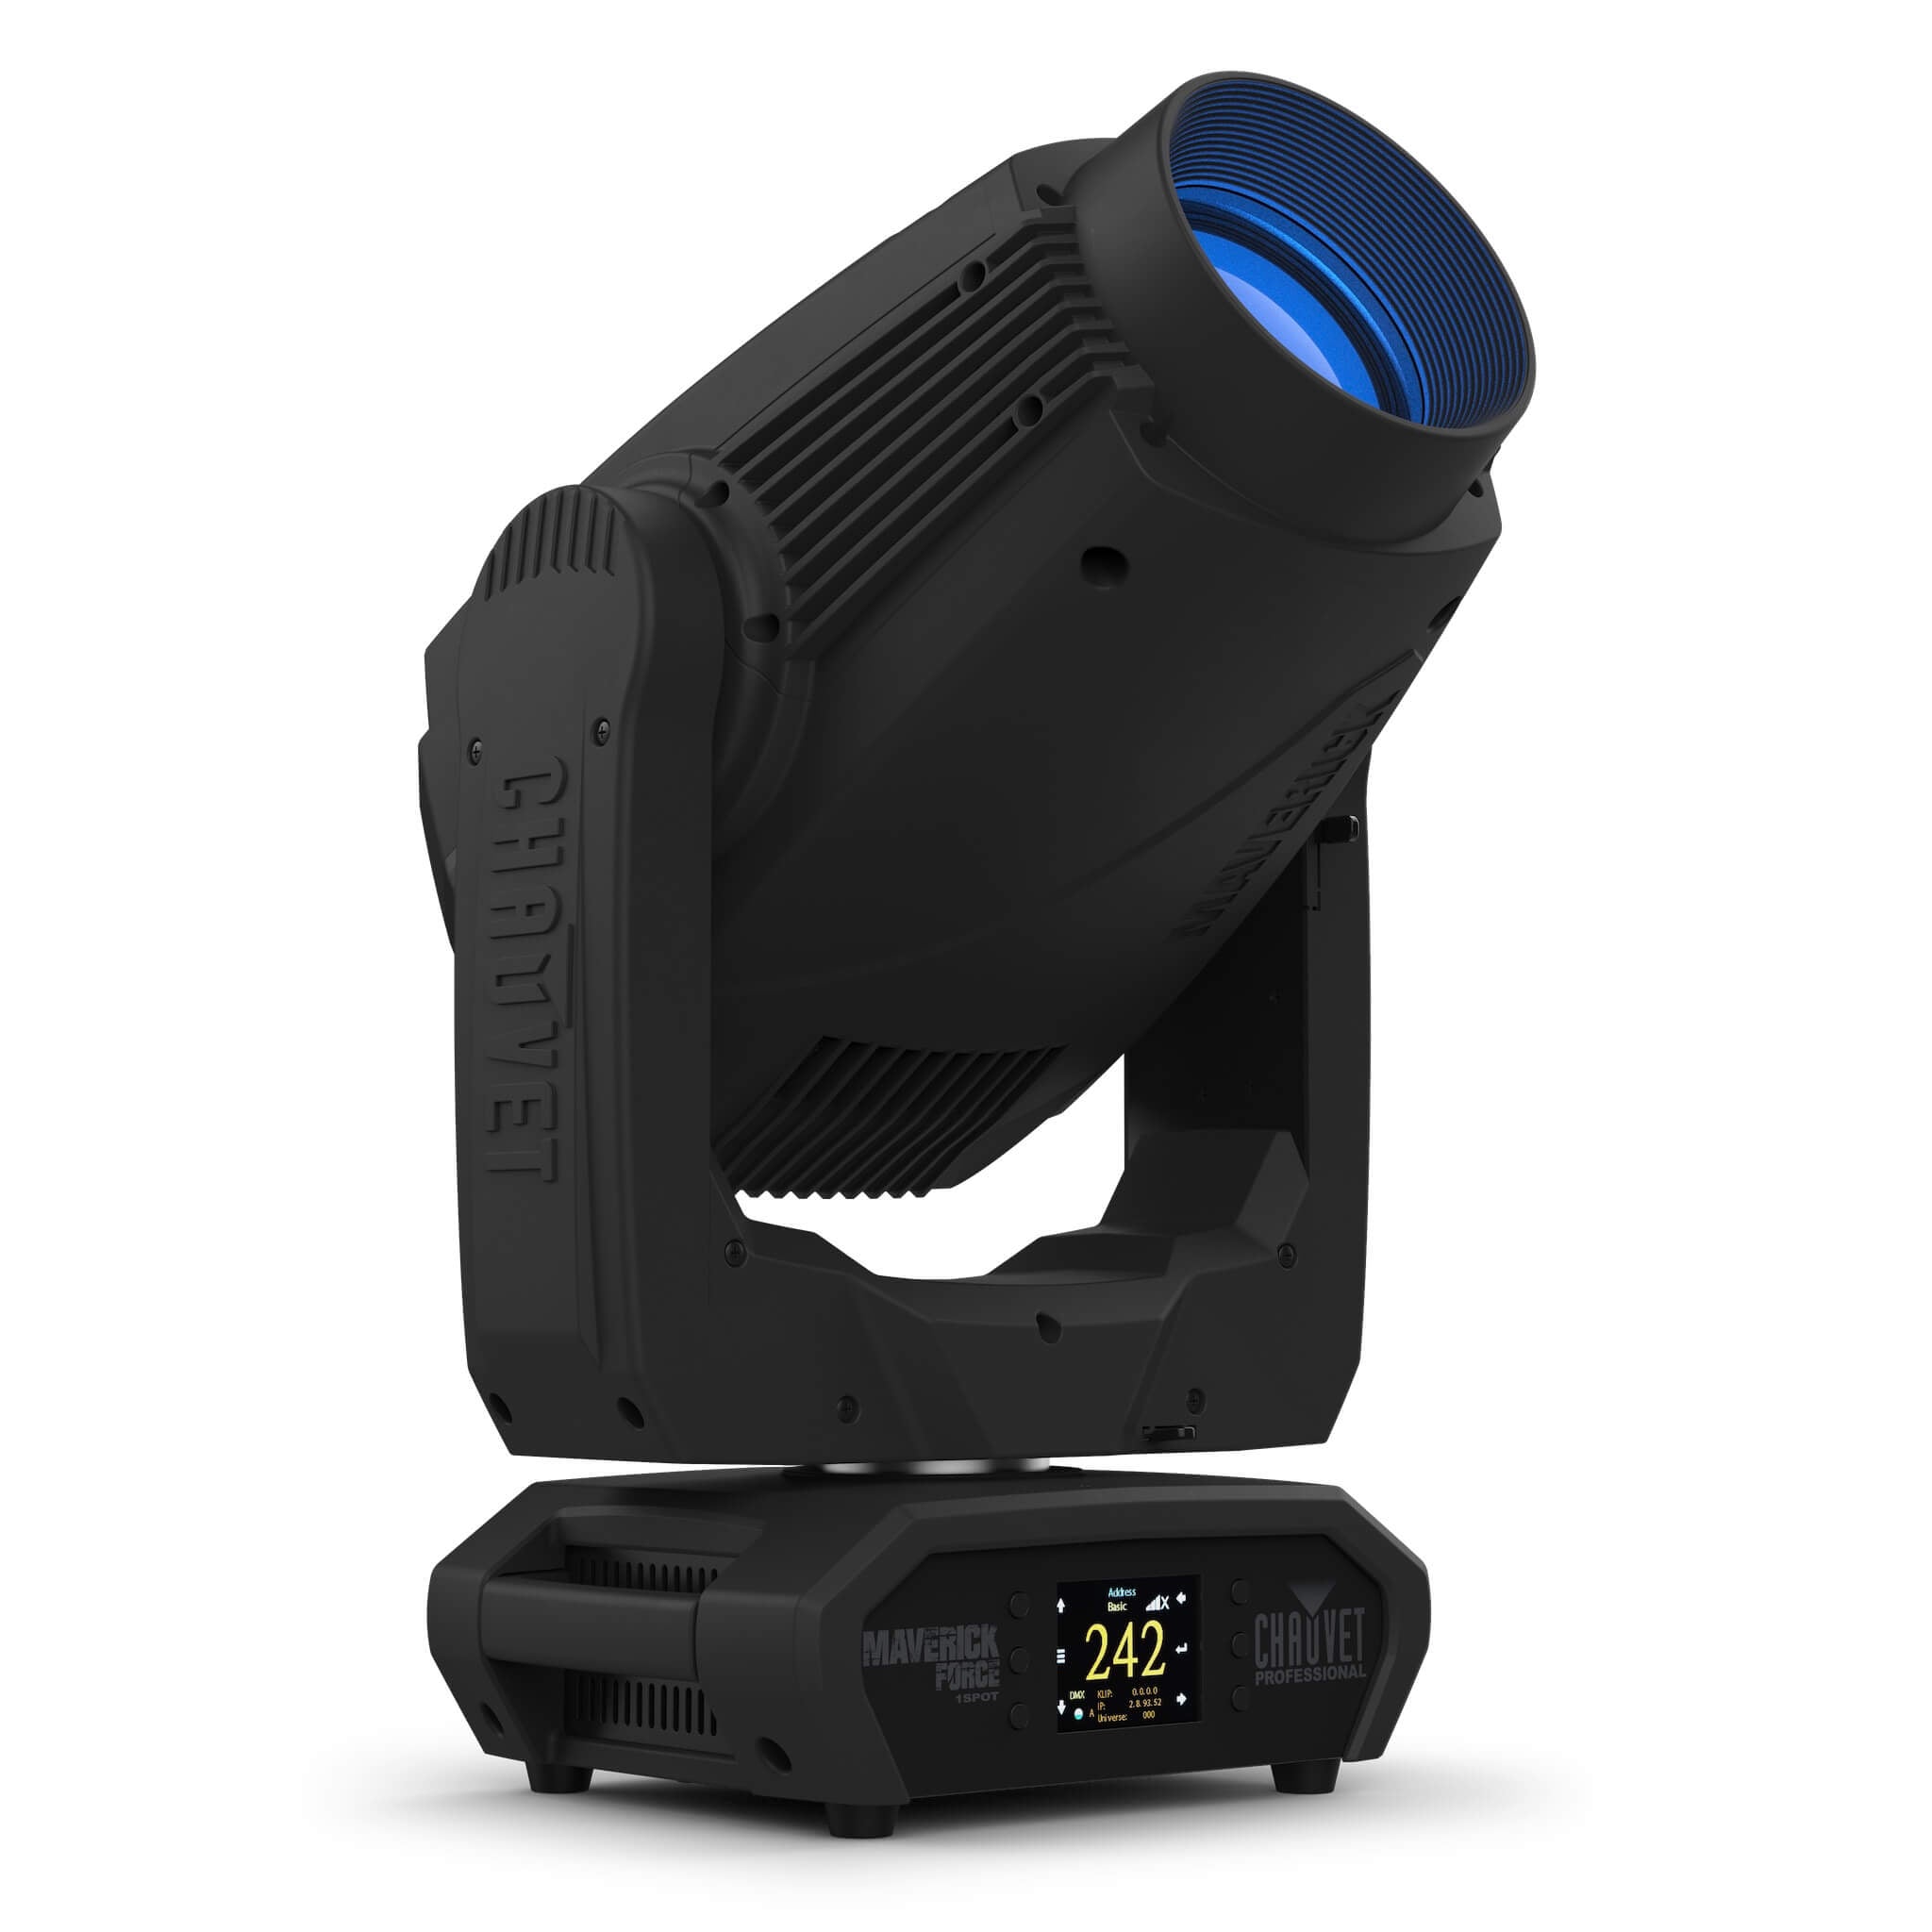 Chauvet Professional Maverick Force 1 Spot - LED Moving Head Light, right